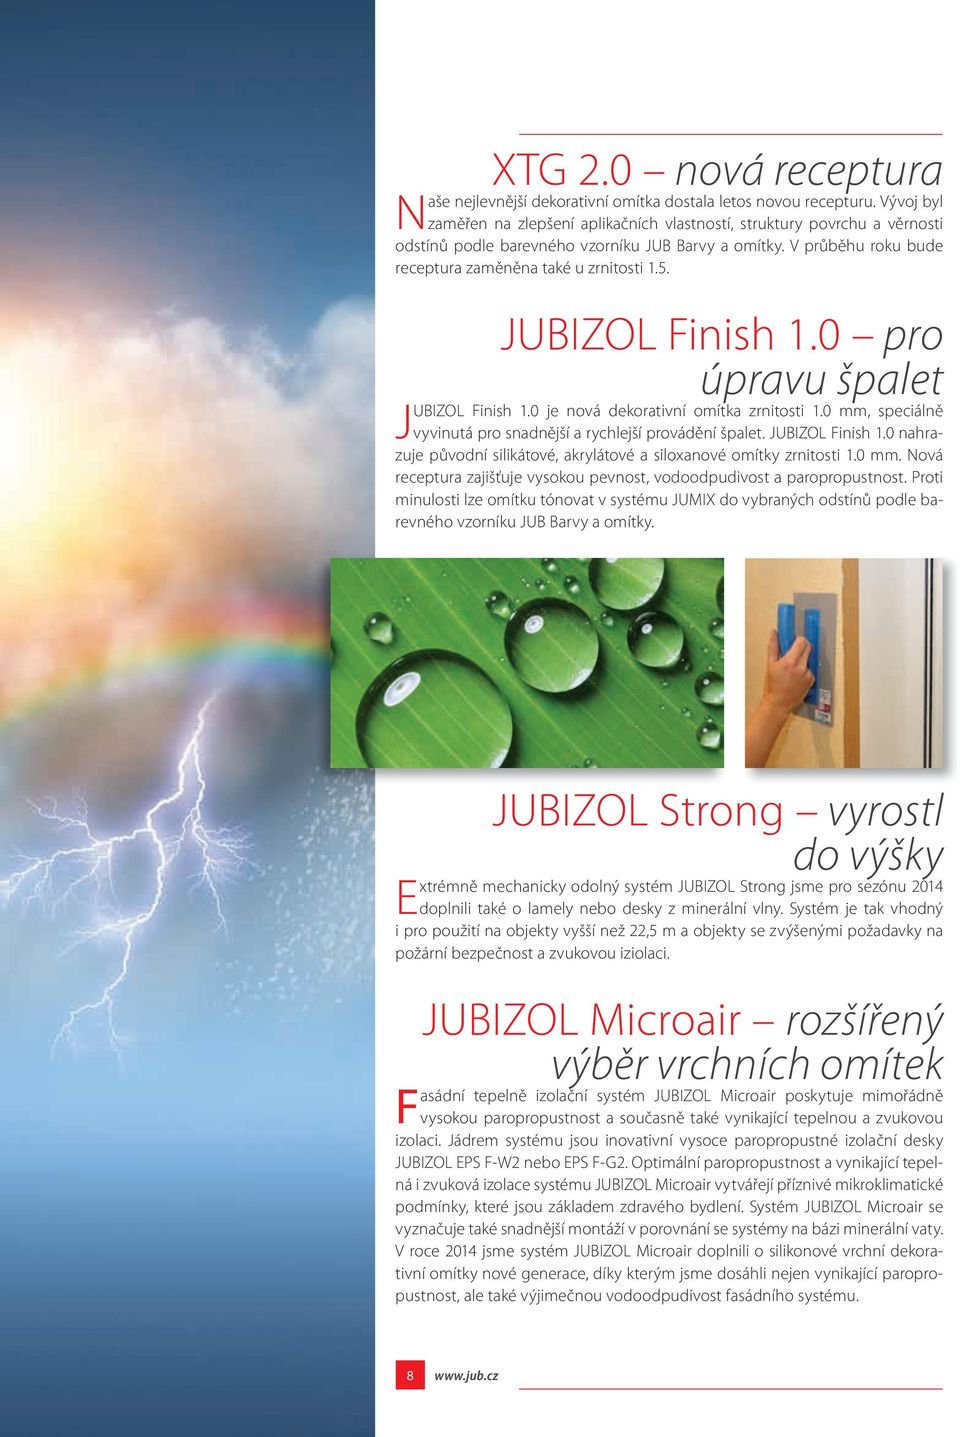 JUBIZOL Finish 1.0 pro úpravu špalet JUBIZOL Finish 1.0 je nová dekorativní omítka zrnitosti 1.0 mm, speciálně vyvinutá pro snadnější a rychlejší provádění špalet. JUBIZOL Finish 1.0 nahrazuje původní silikátové, akrylátové a siloxanové omítky zrnitosti 1.